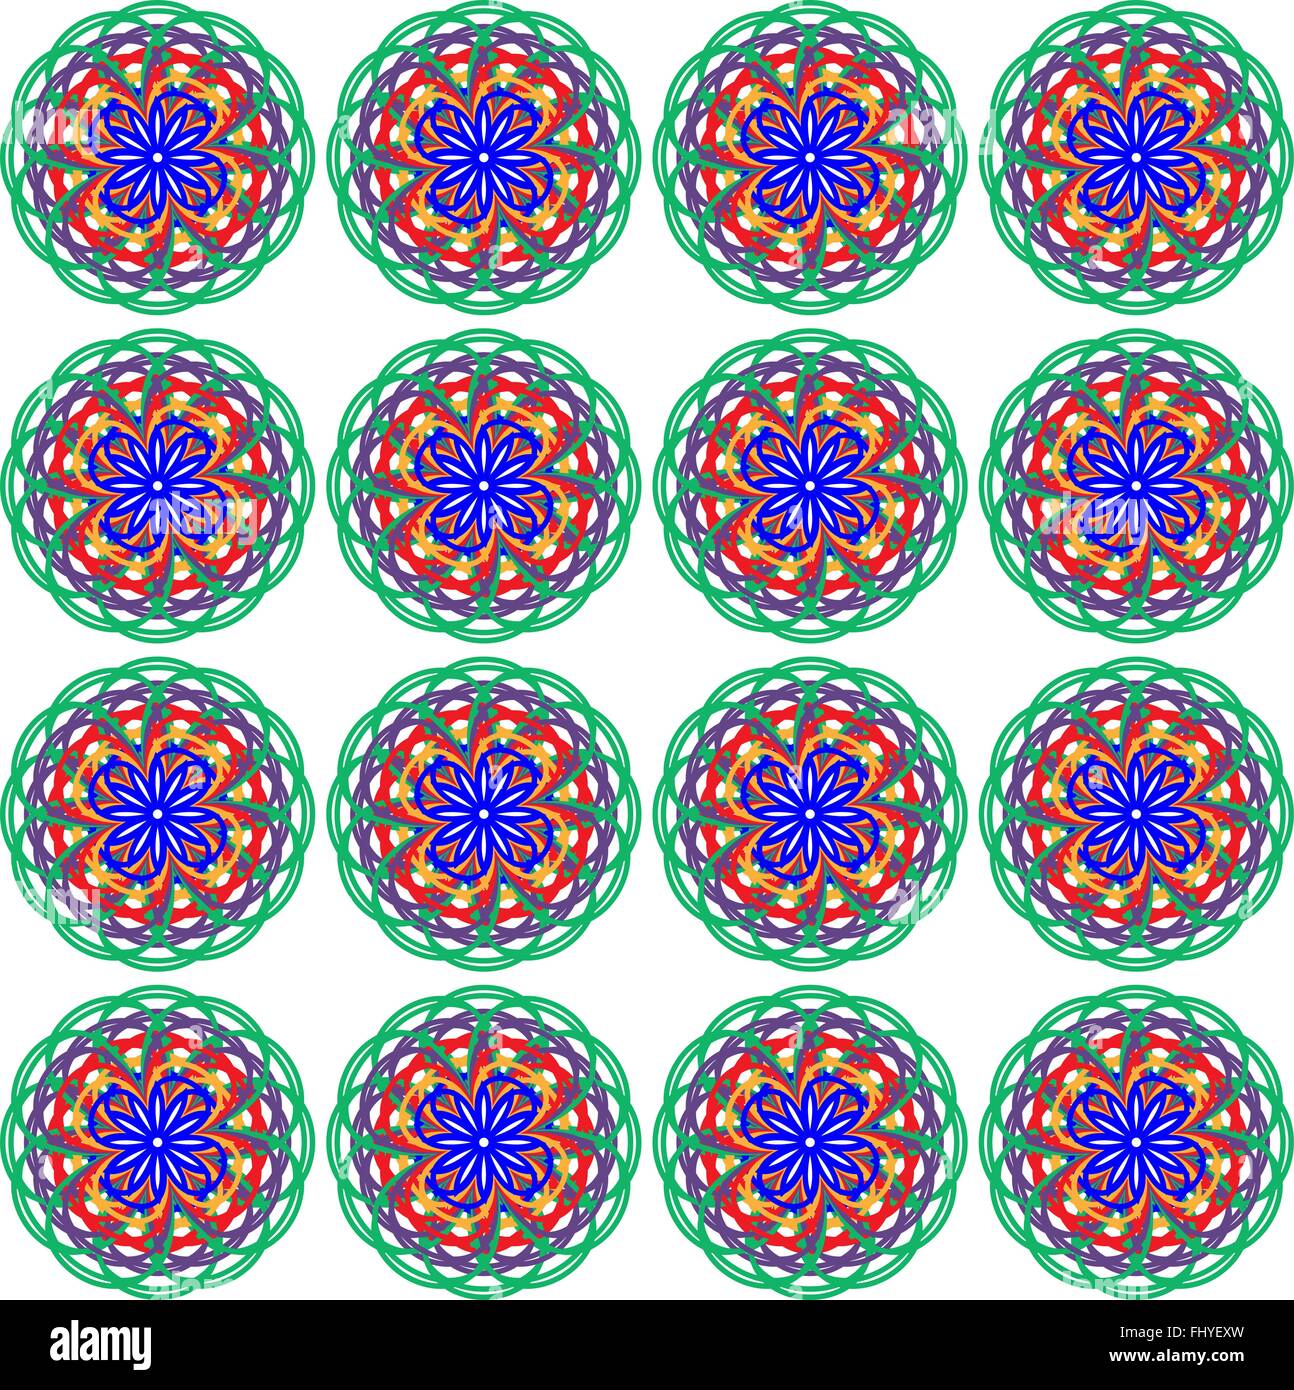 Altmodisches Blumendruck für Stoff. Nahtlose Muster in verschiedenen Farben mit dominanten blauen Farbe. Digitale Vektor-illustration Stock Vektor